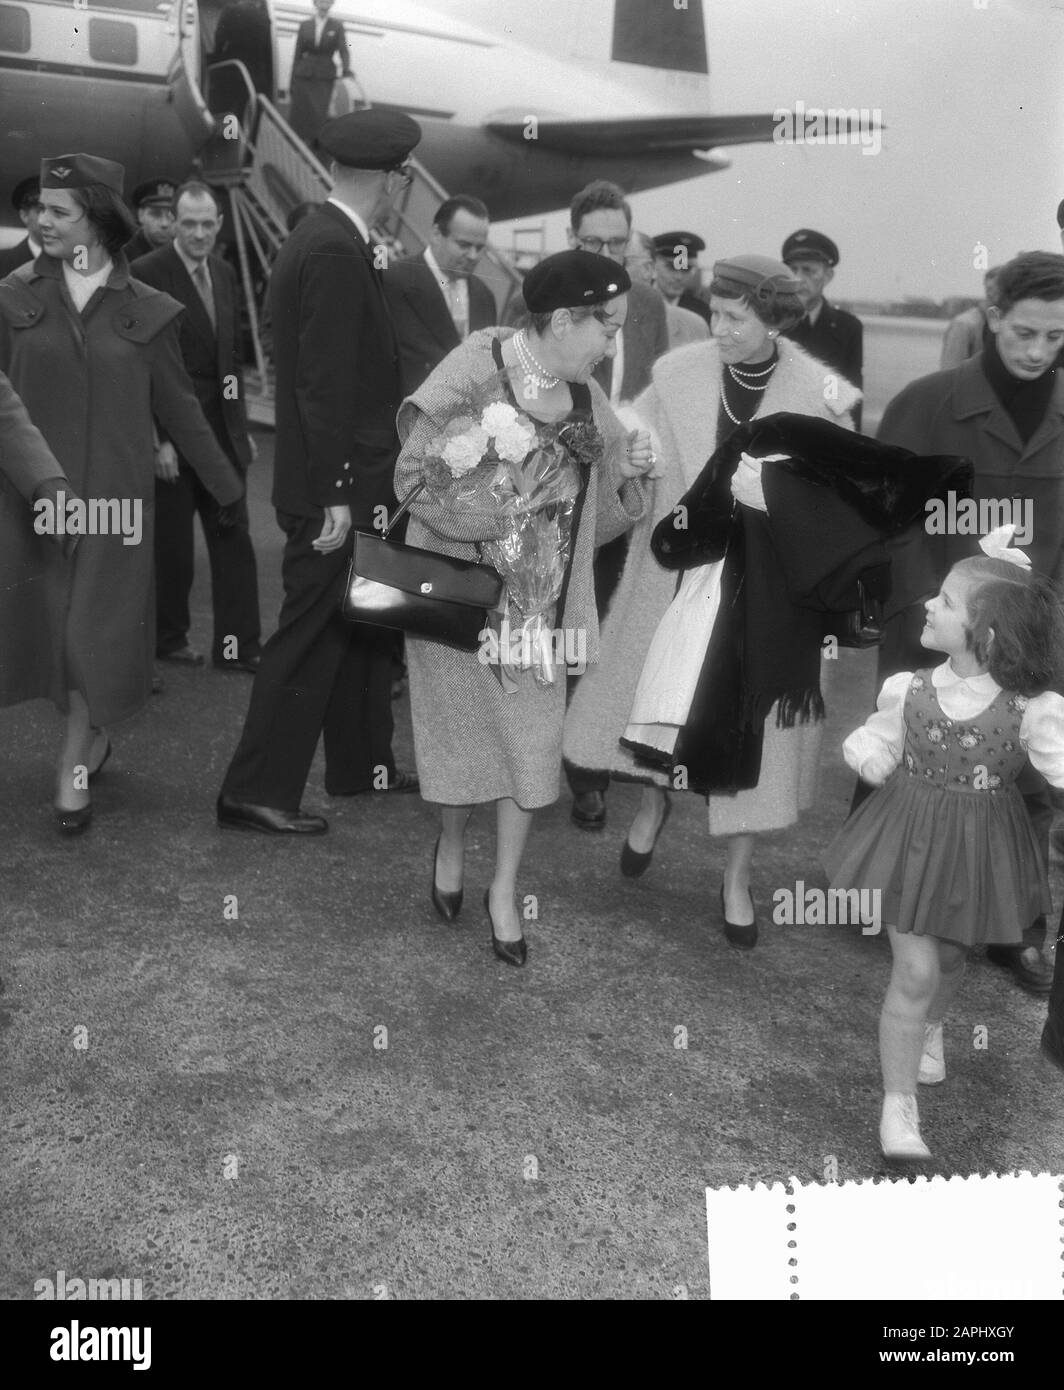 Amerikanische Filmstar Gloria Swanson, Ankunft Schiphol Datum: 4. November 1955 Ort: Noord-Holland, Schiphol Schlüsselwörter: Ankünfte, Schauspielerinnen, Filmstars, Flughäfen persönlicher Name: Swanson, Gloria Stockfoto